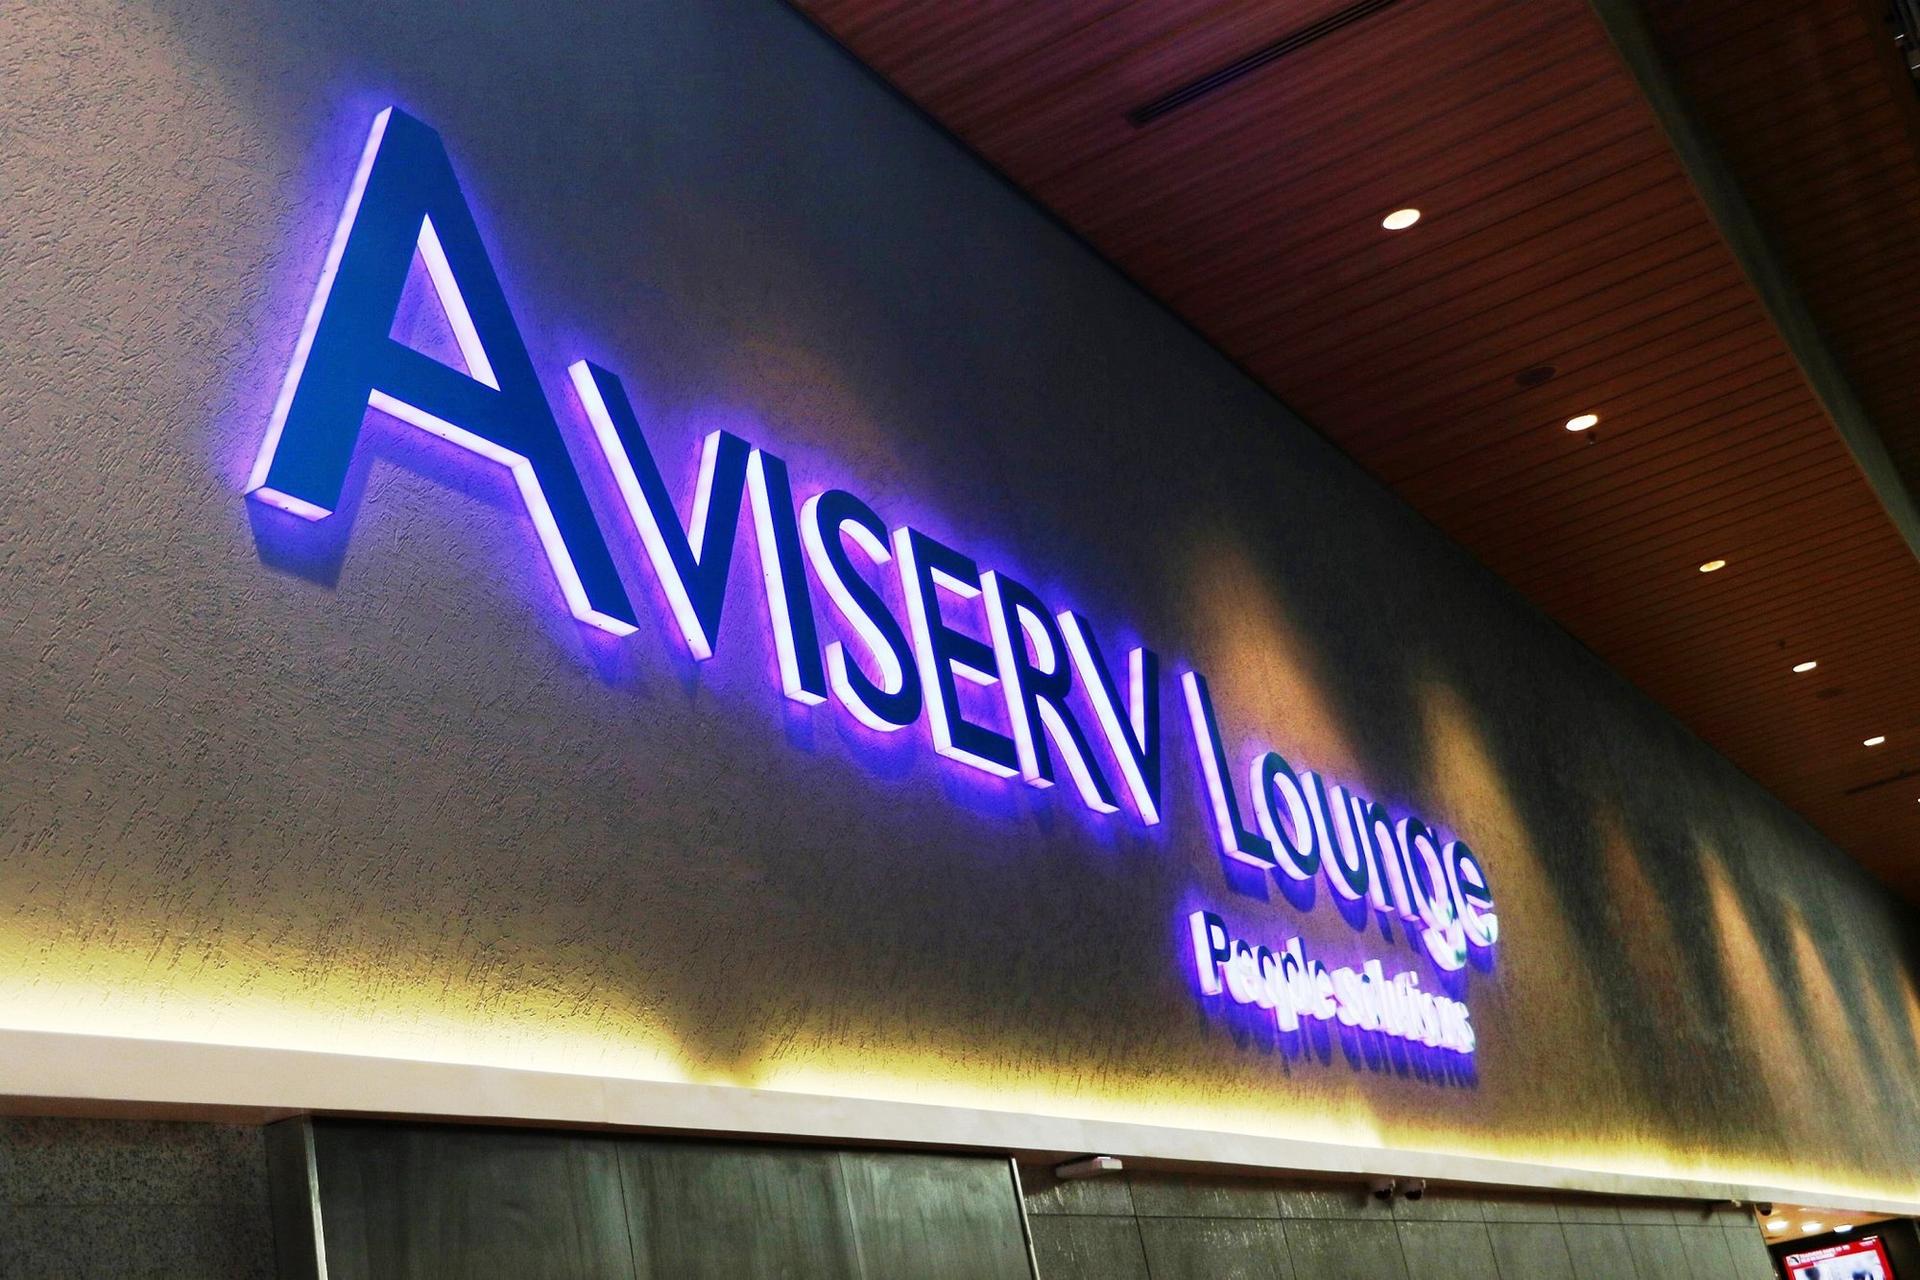 Aviserv Lounge (West) image 12 of 16